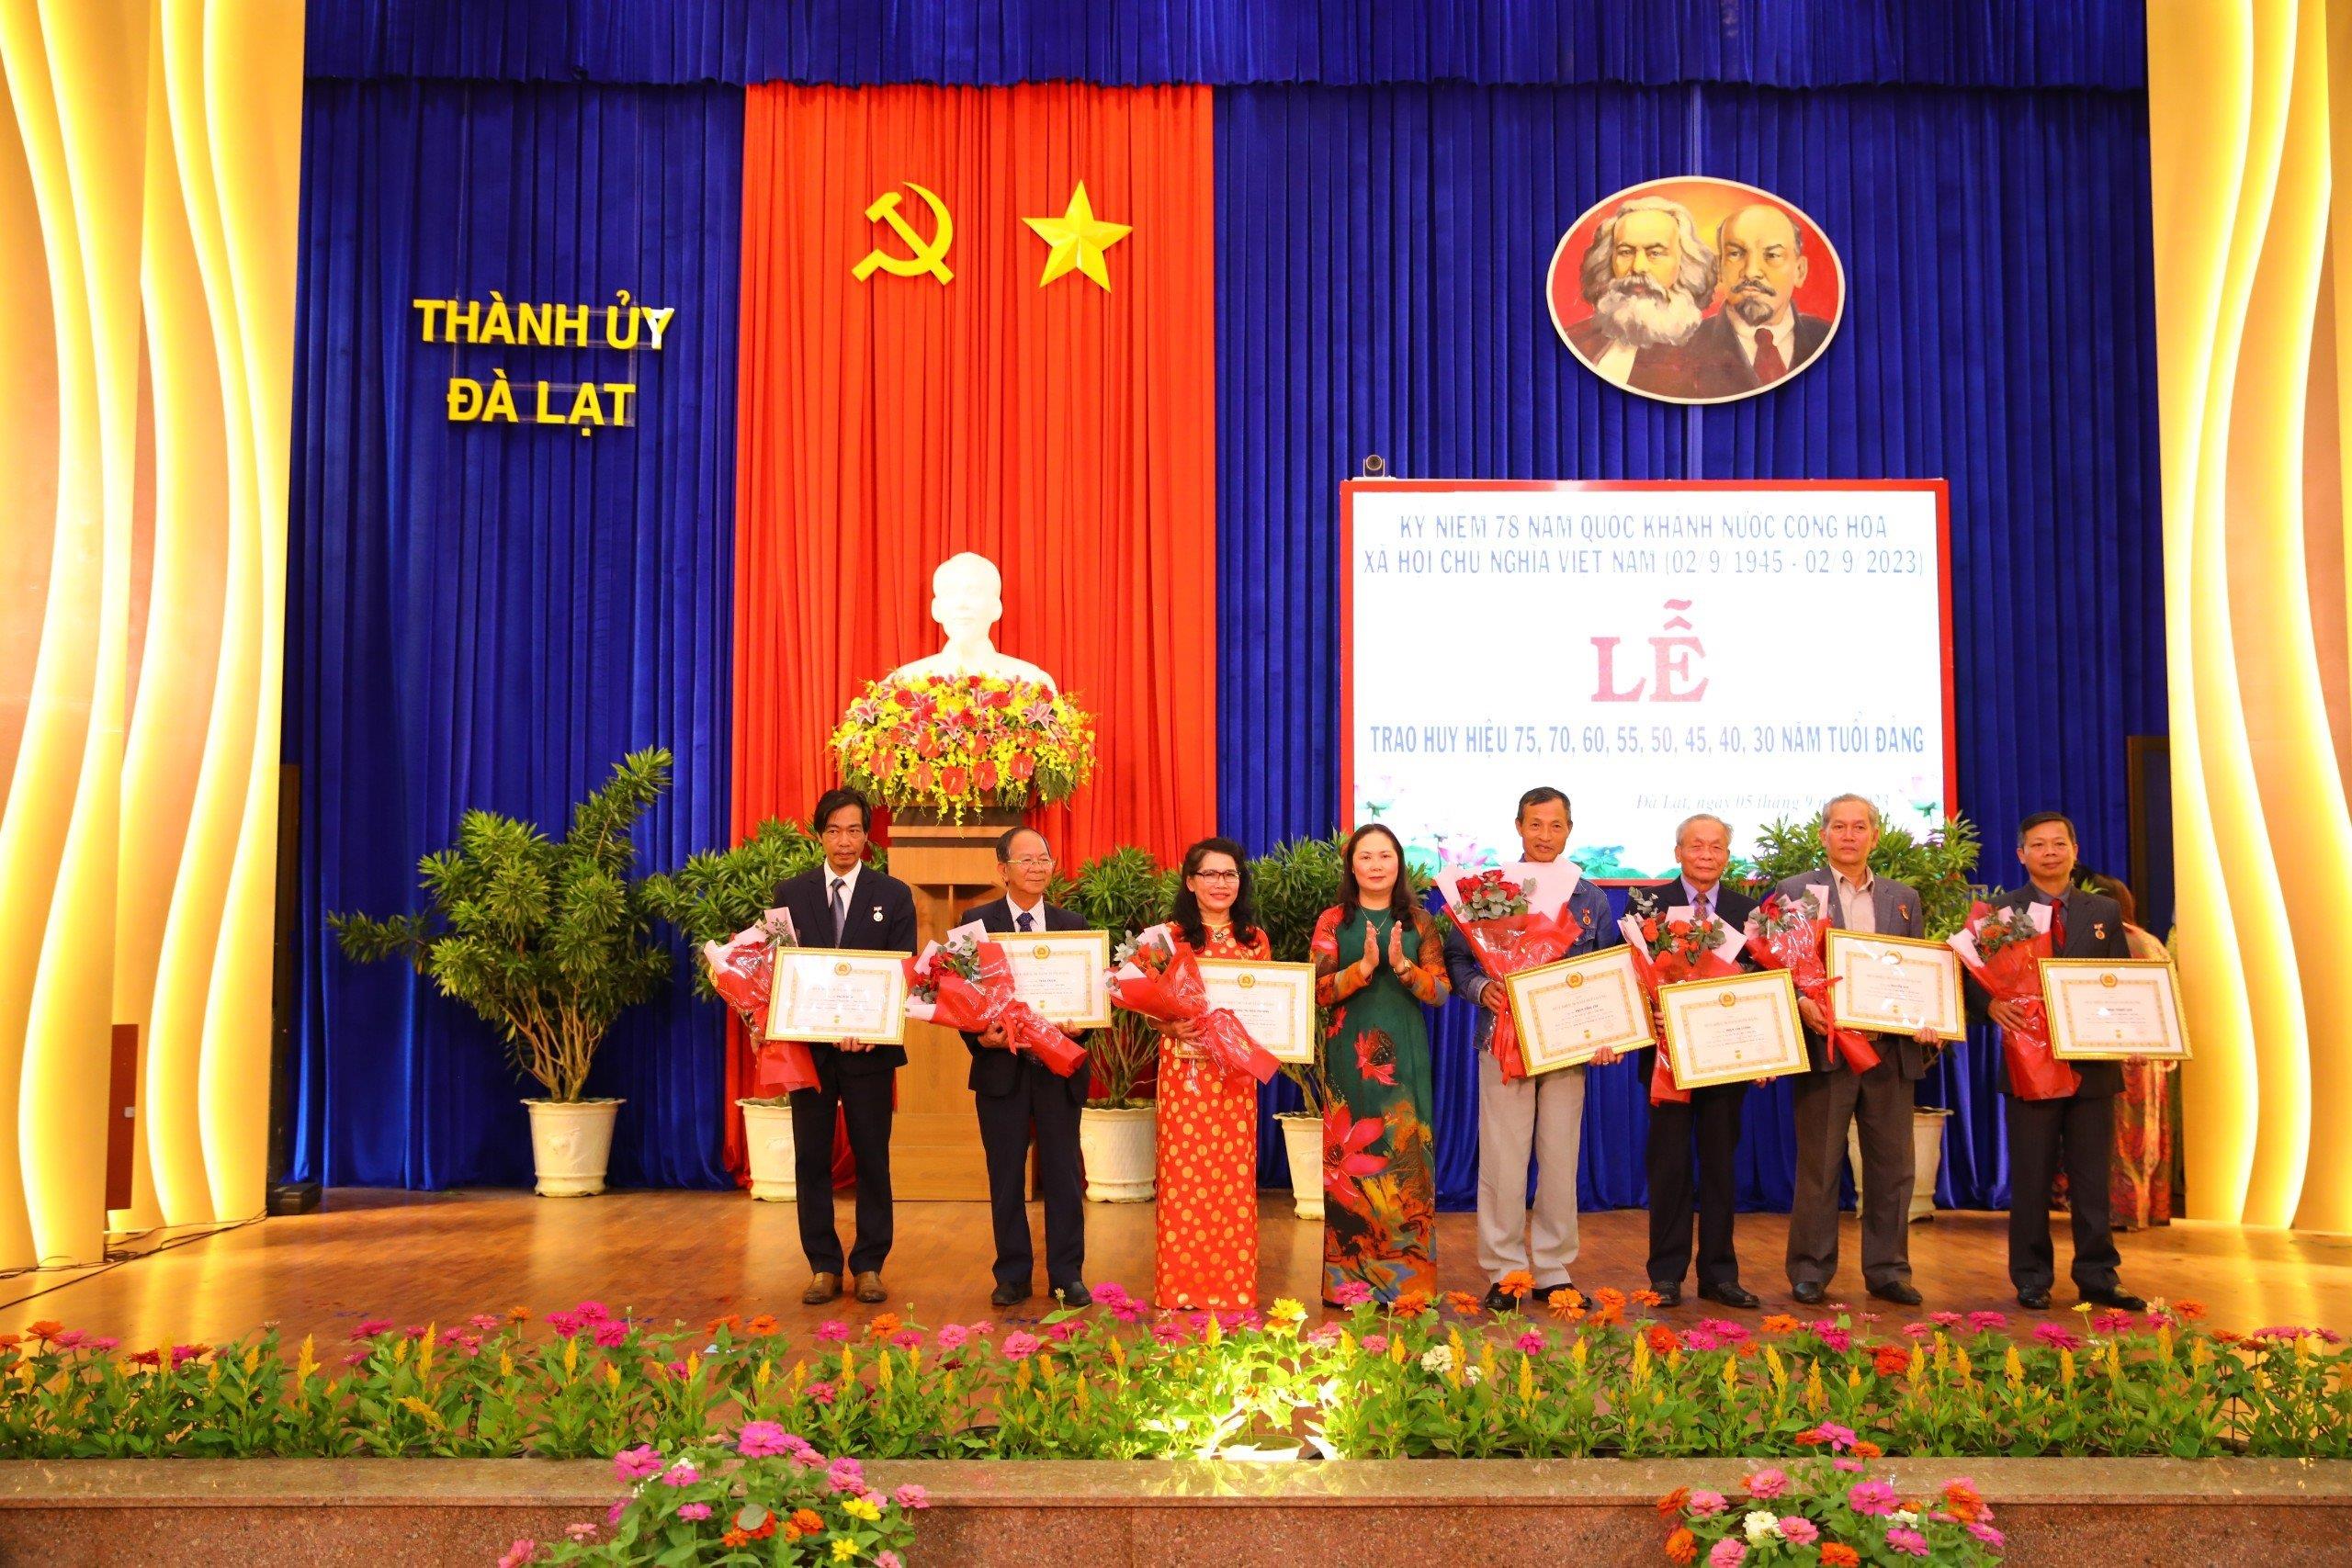 Đồng chí Ngô Thị Mỹ Lợi – Phó Bí thư Thành ủy, Chủ tịch Hội đồng nhân dân thành phố Đà Lạt trao huy hiệu Đảng cho Đảng viên cao niên